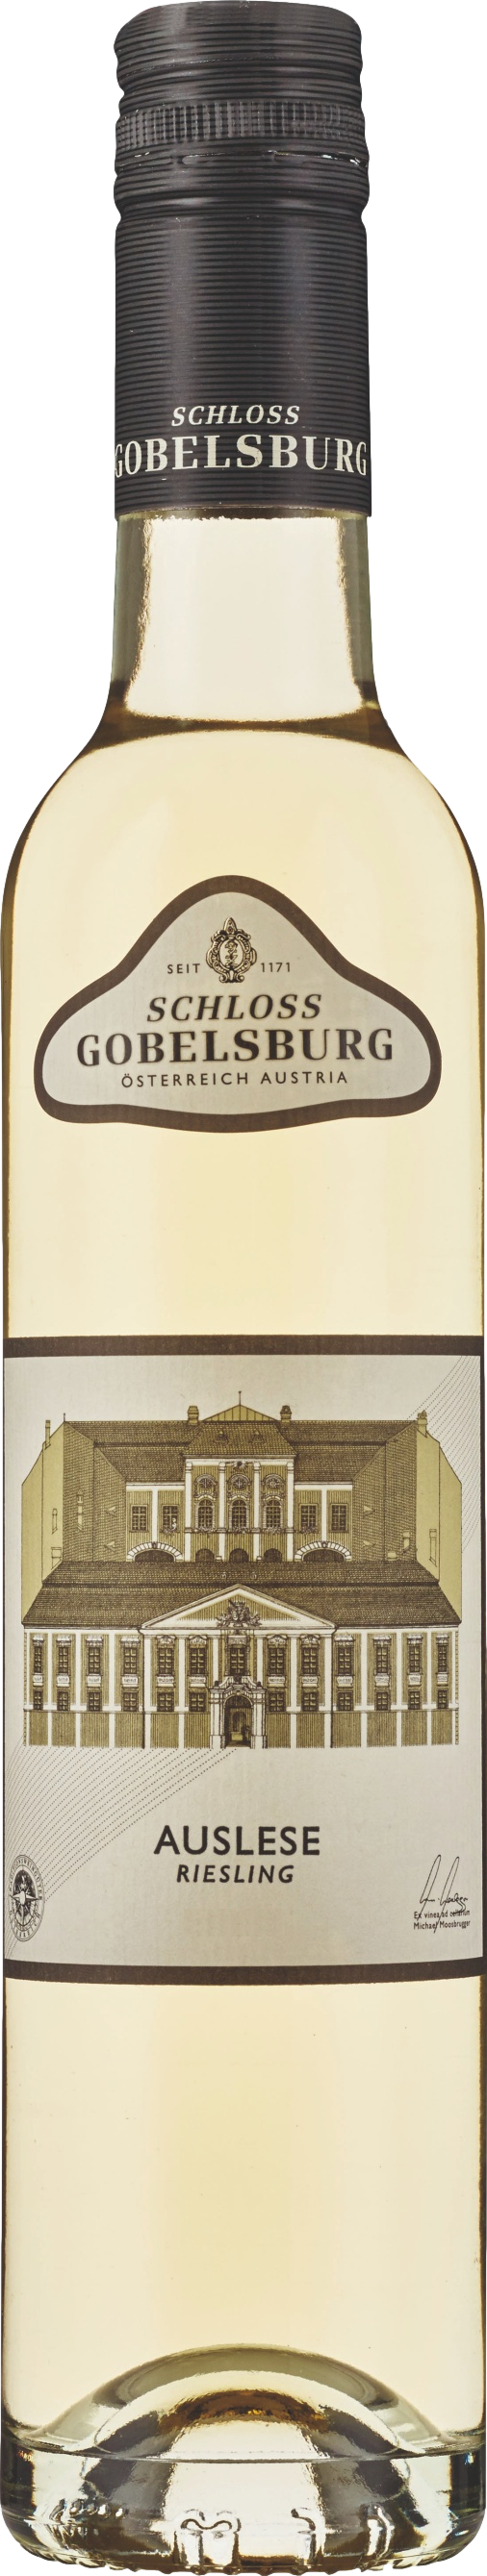 Schloss Gobelsburg Auslese Riesling 2017 Bílé 9.0% 0.375 l